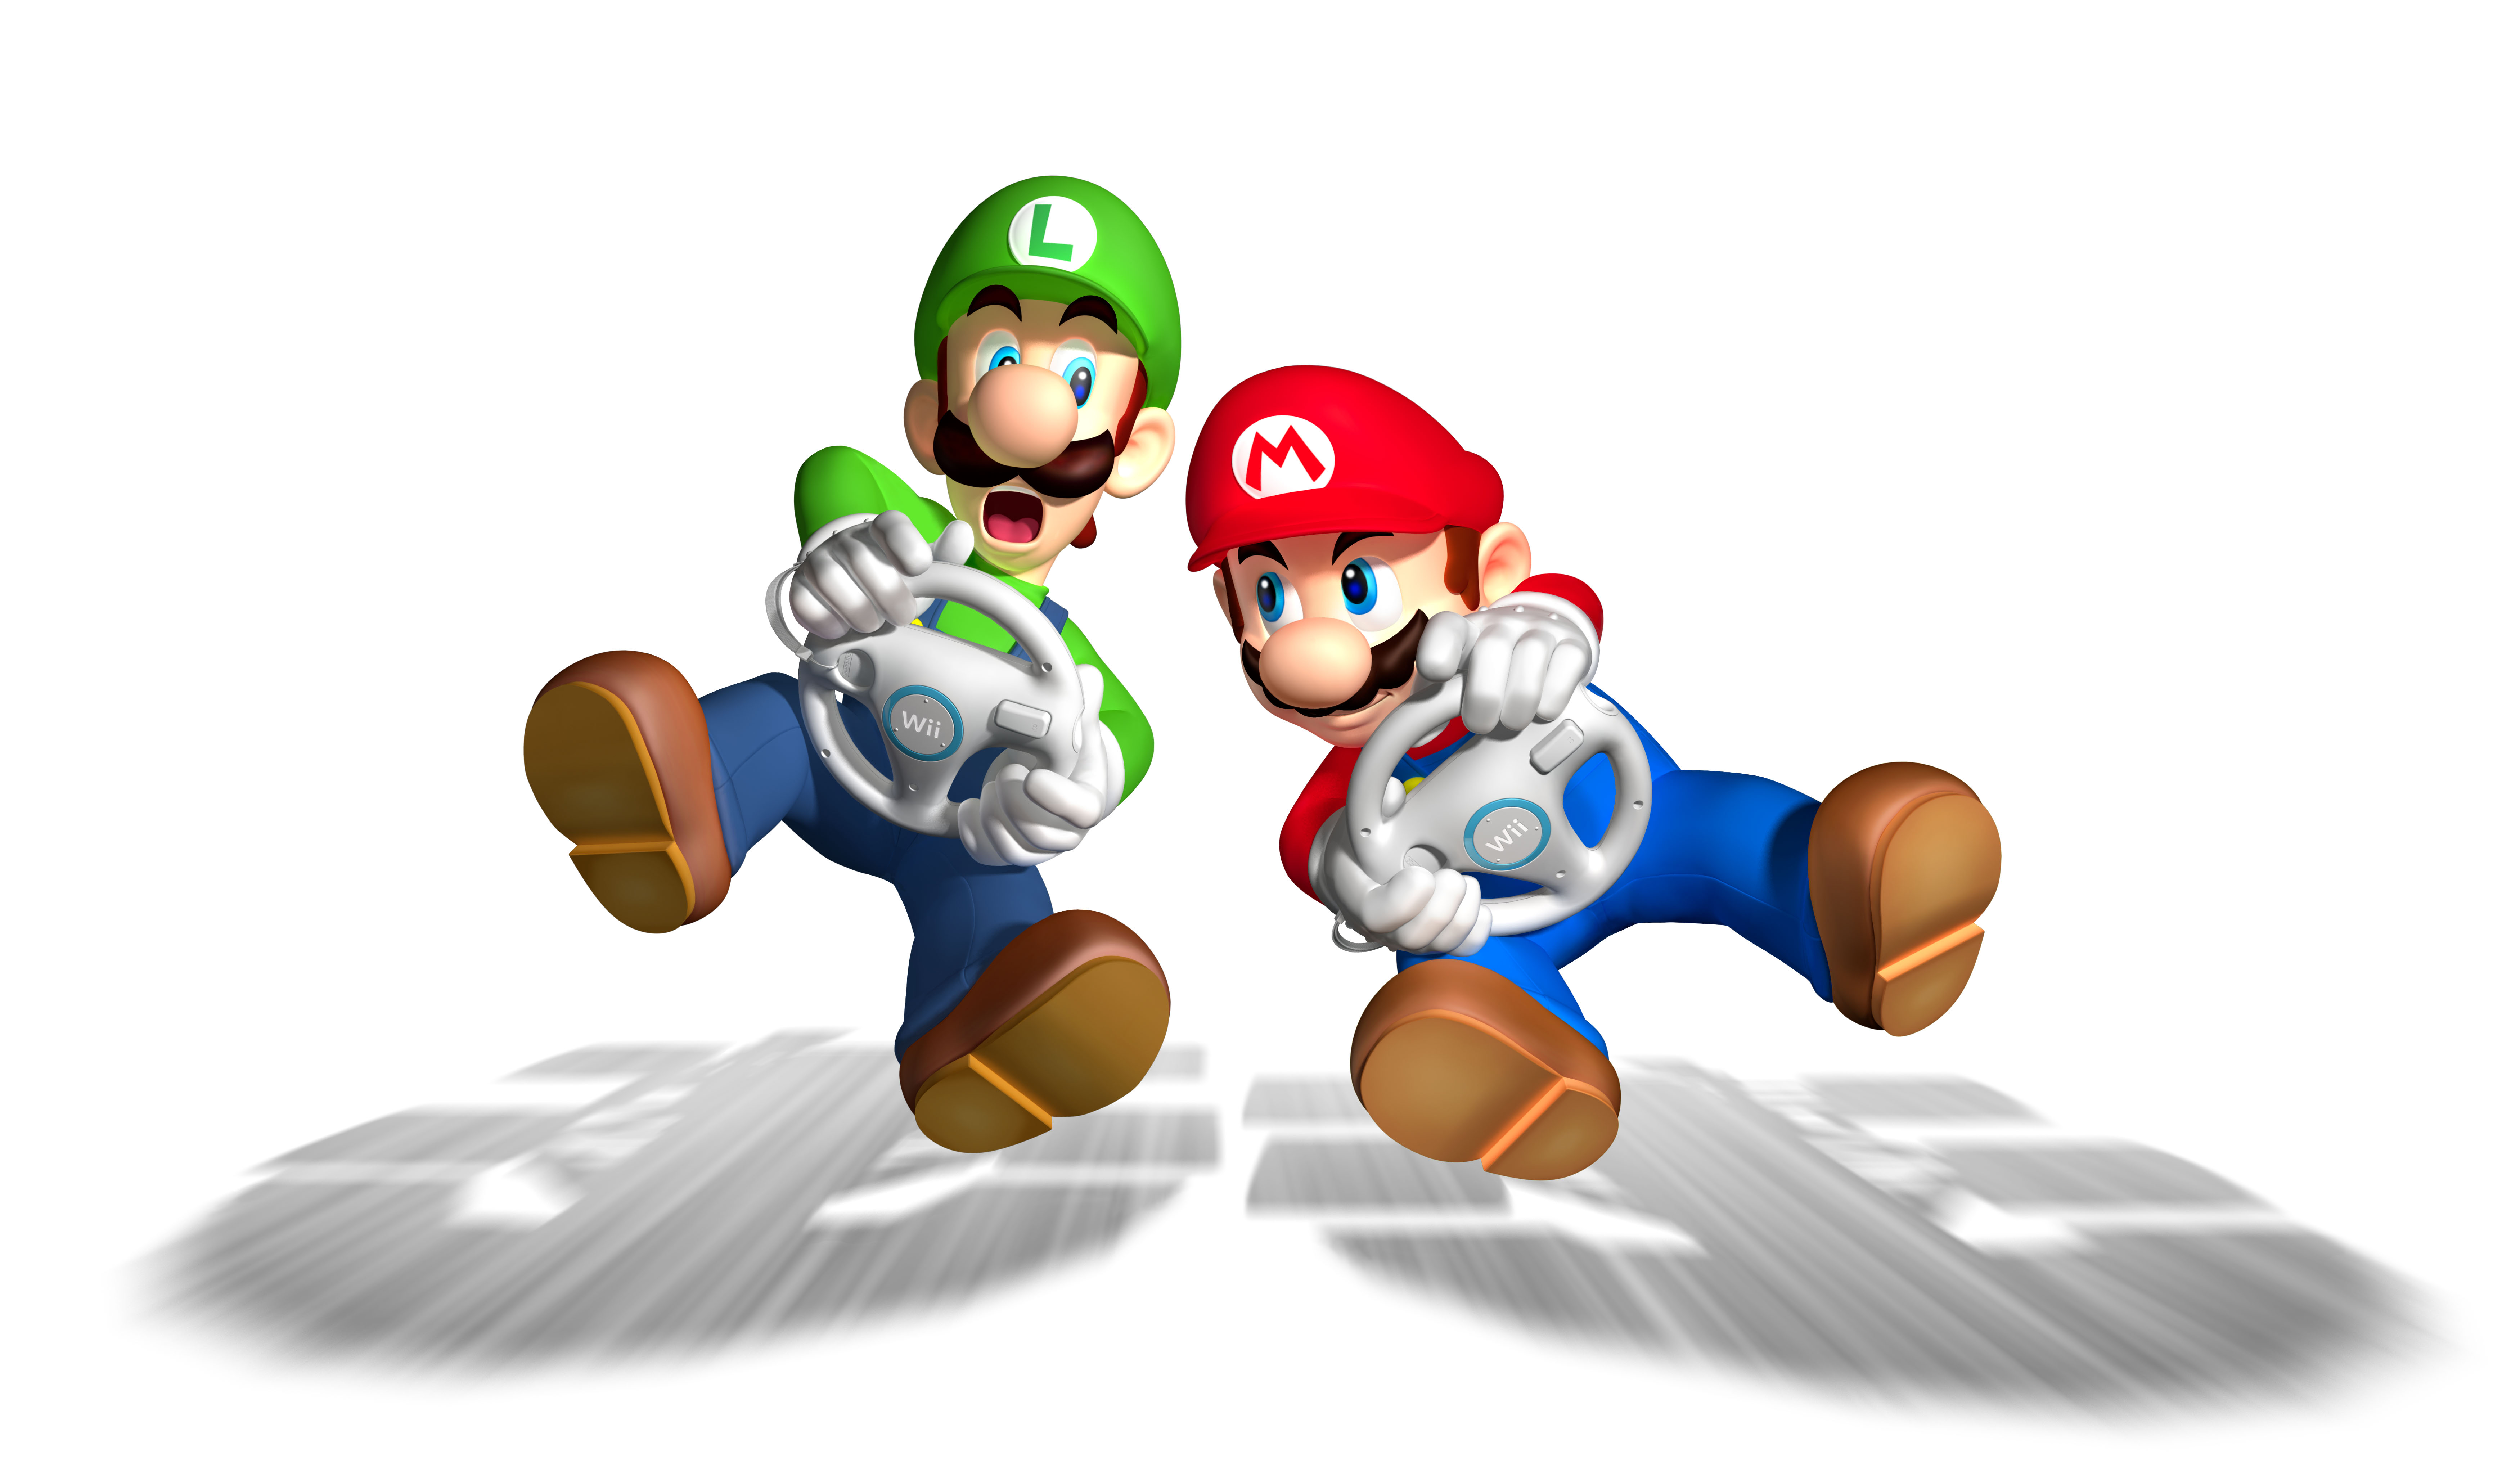 Kart Mario Luigi HD Wallpaper In High Resolution At Games